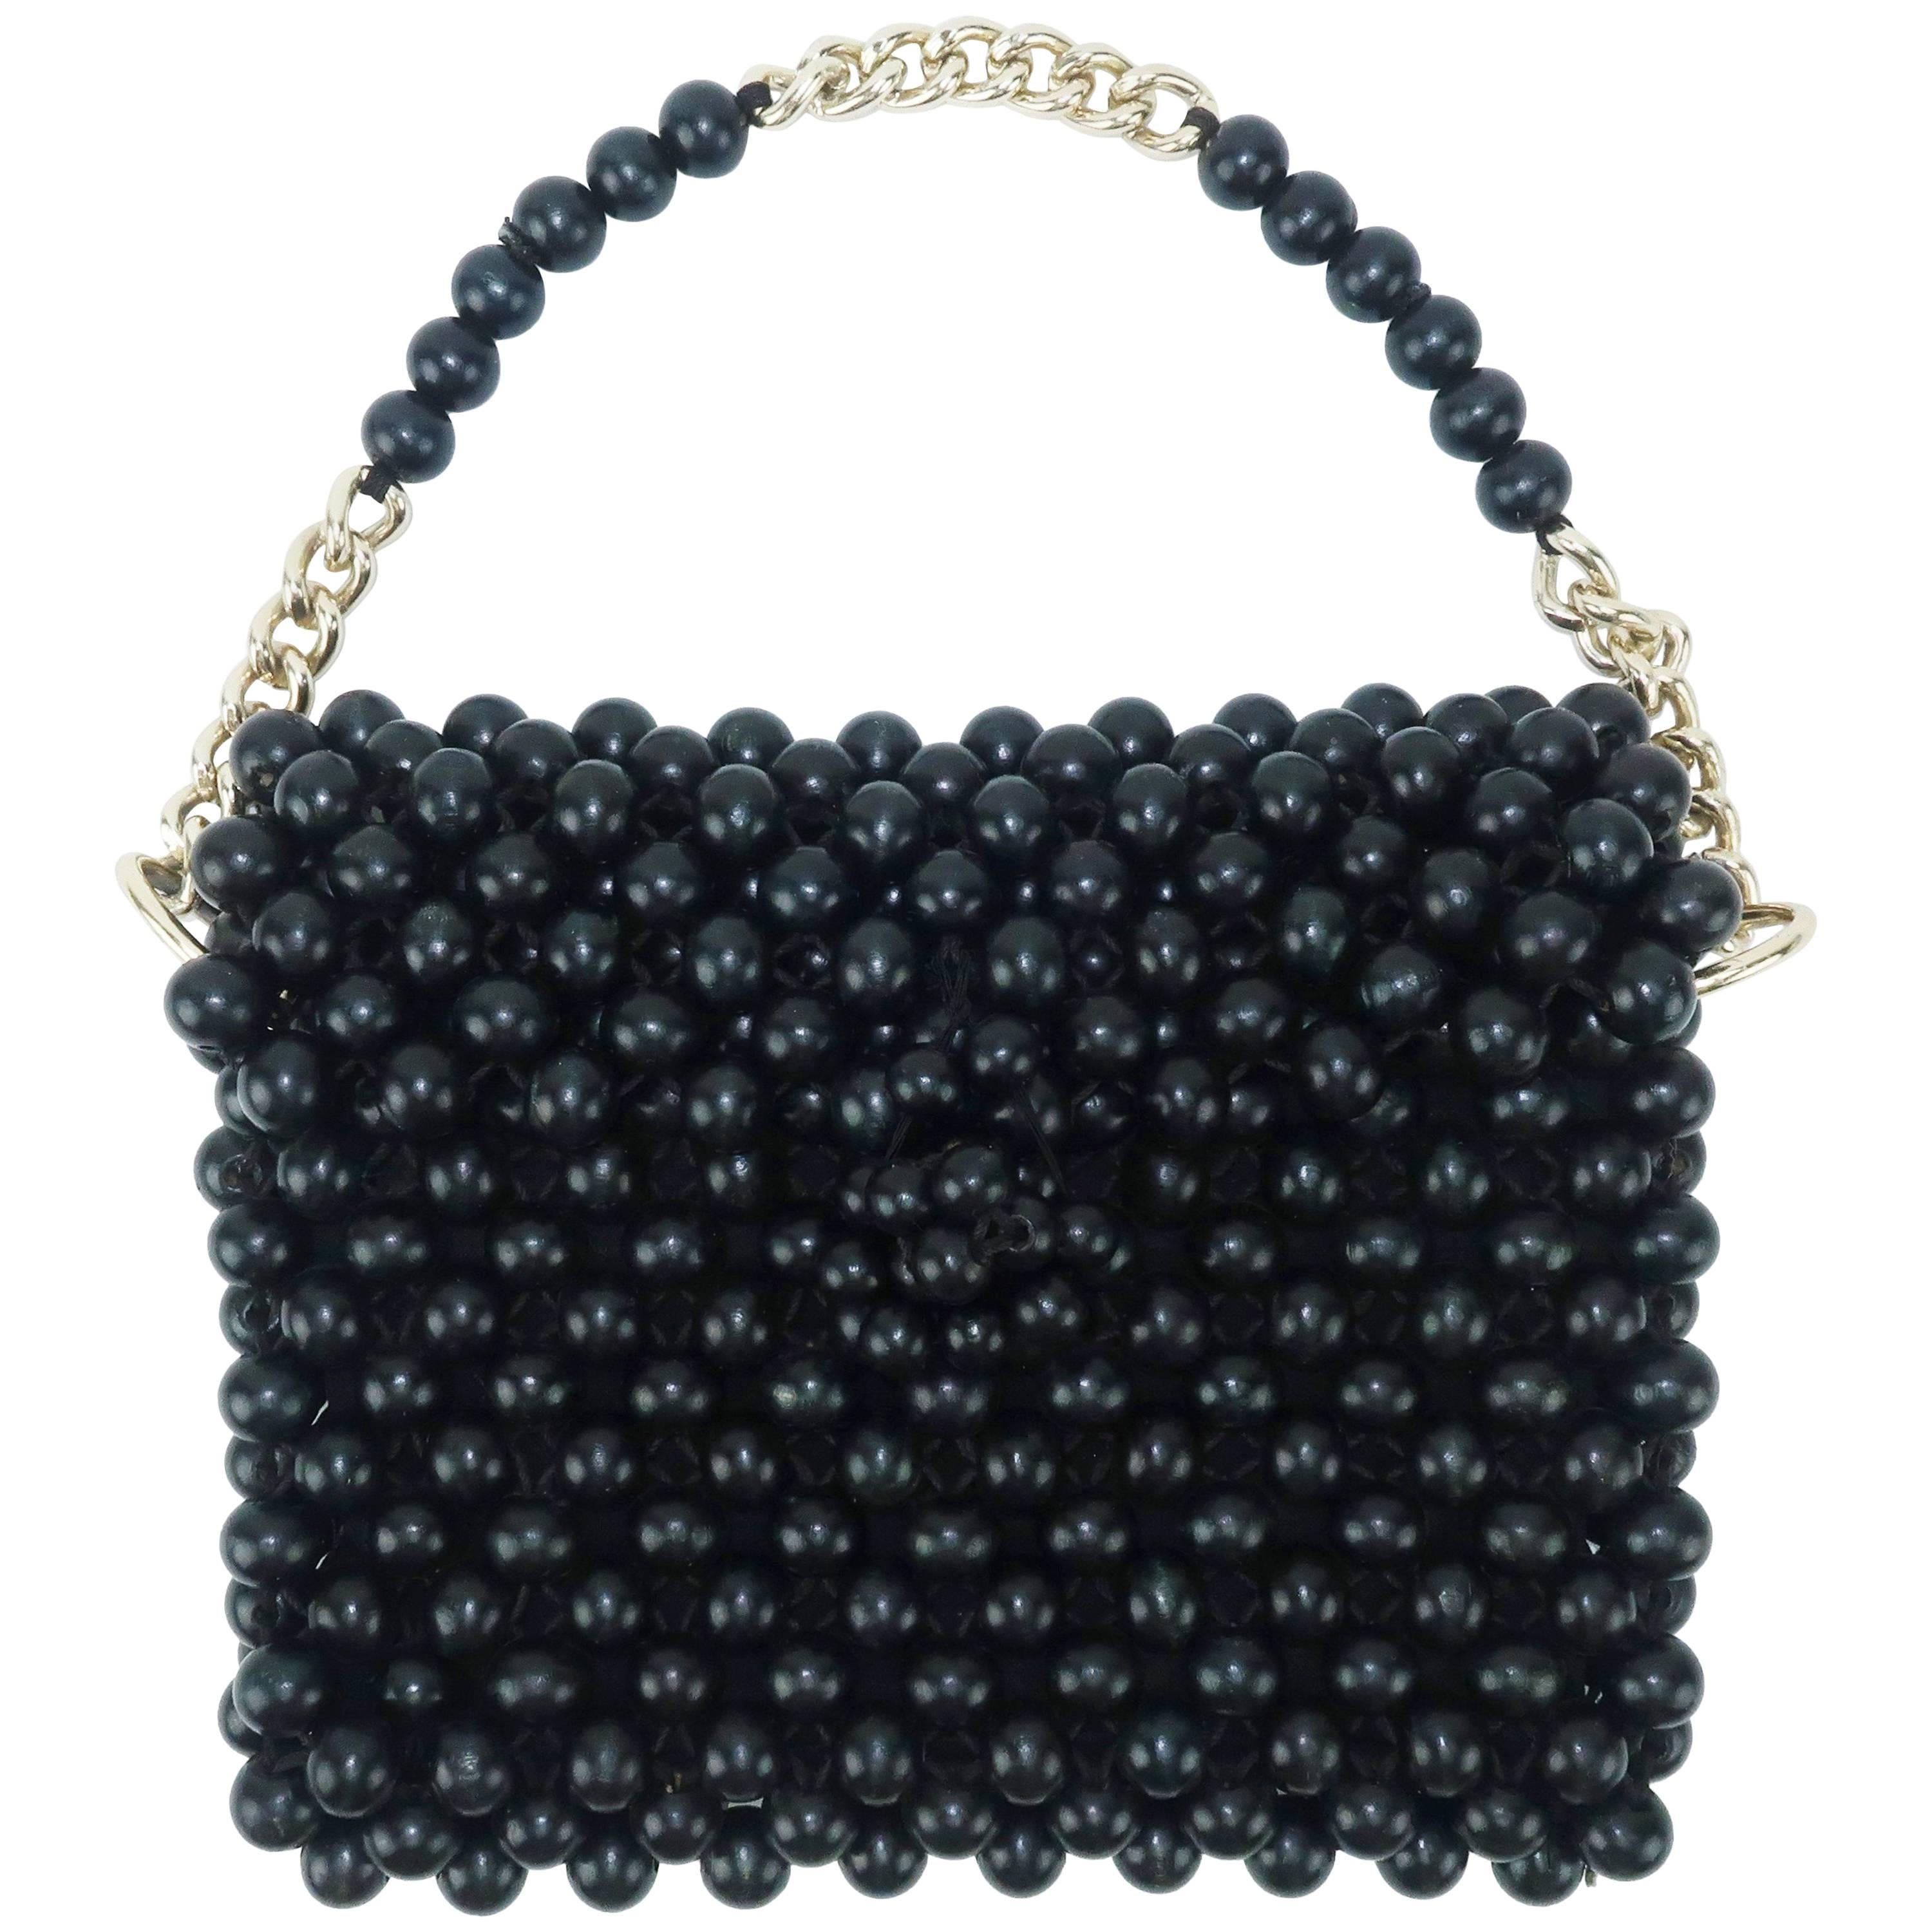 1960's Mod Black Wood Bead Handbag